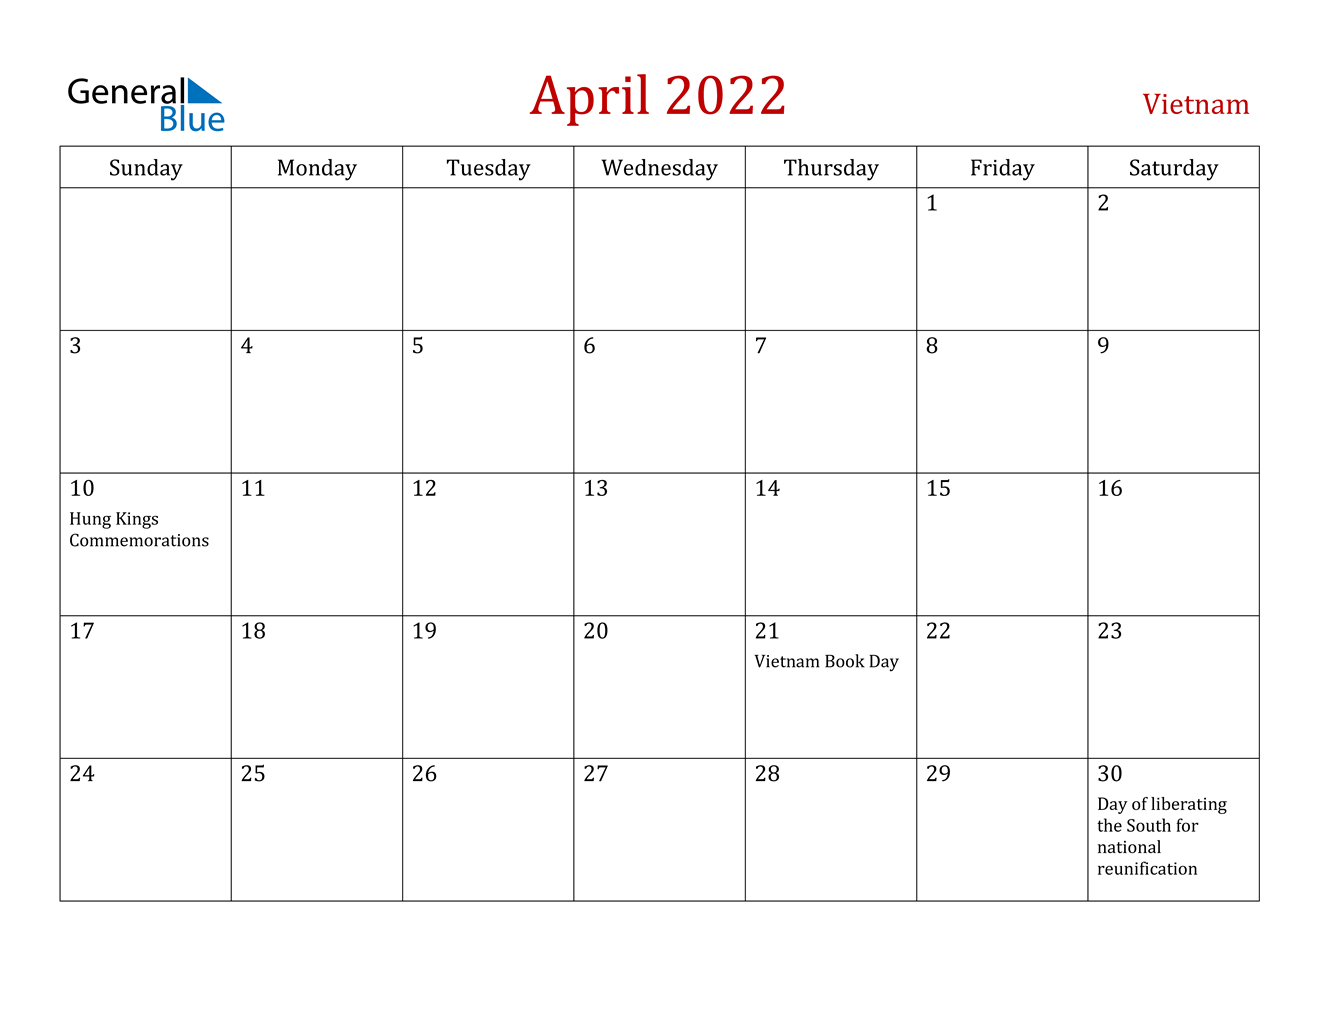 April 2022 Calendar - Vietnam